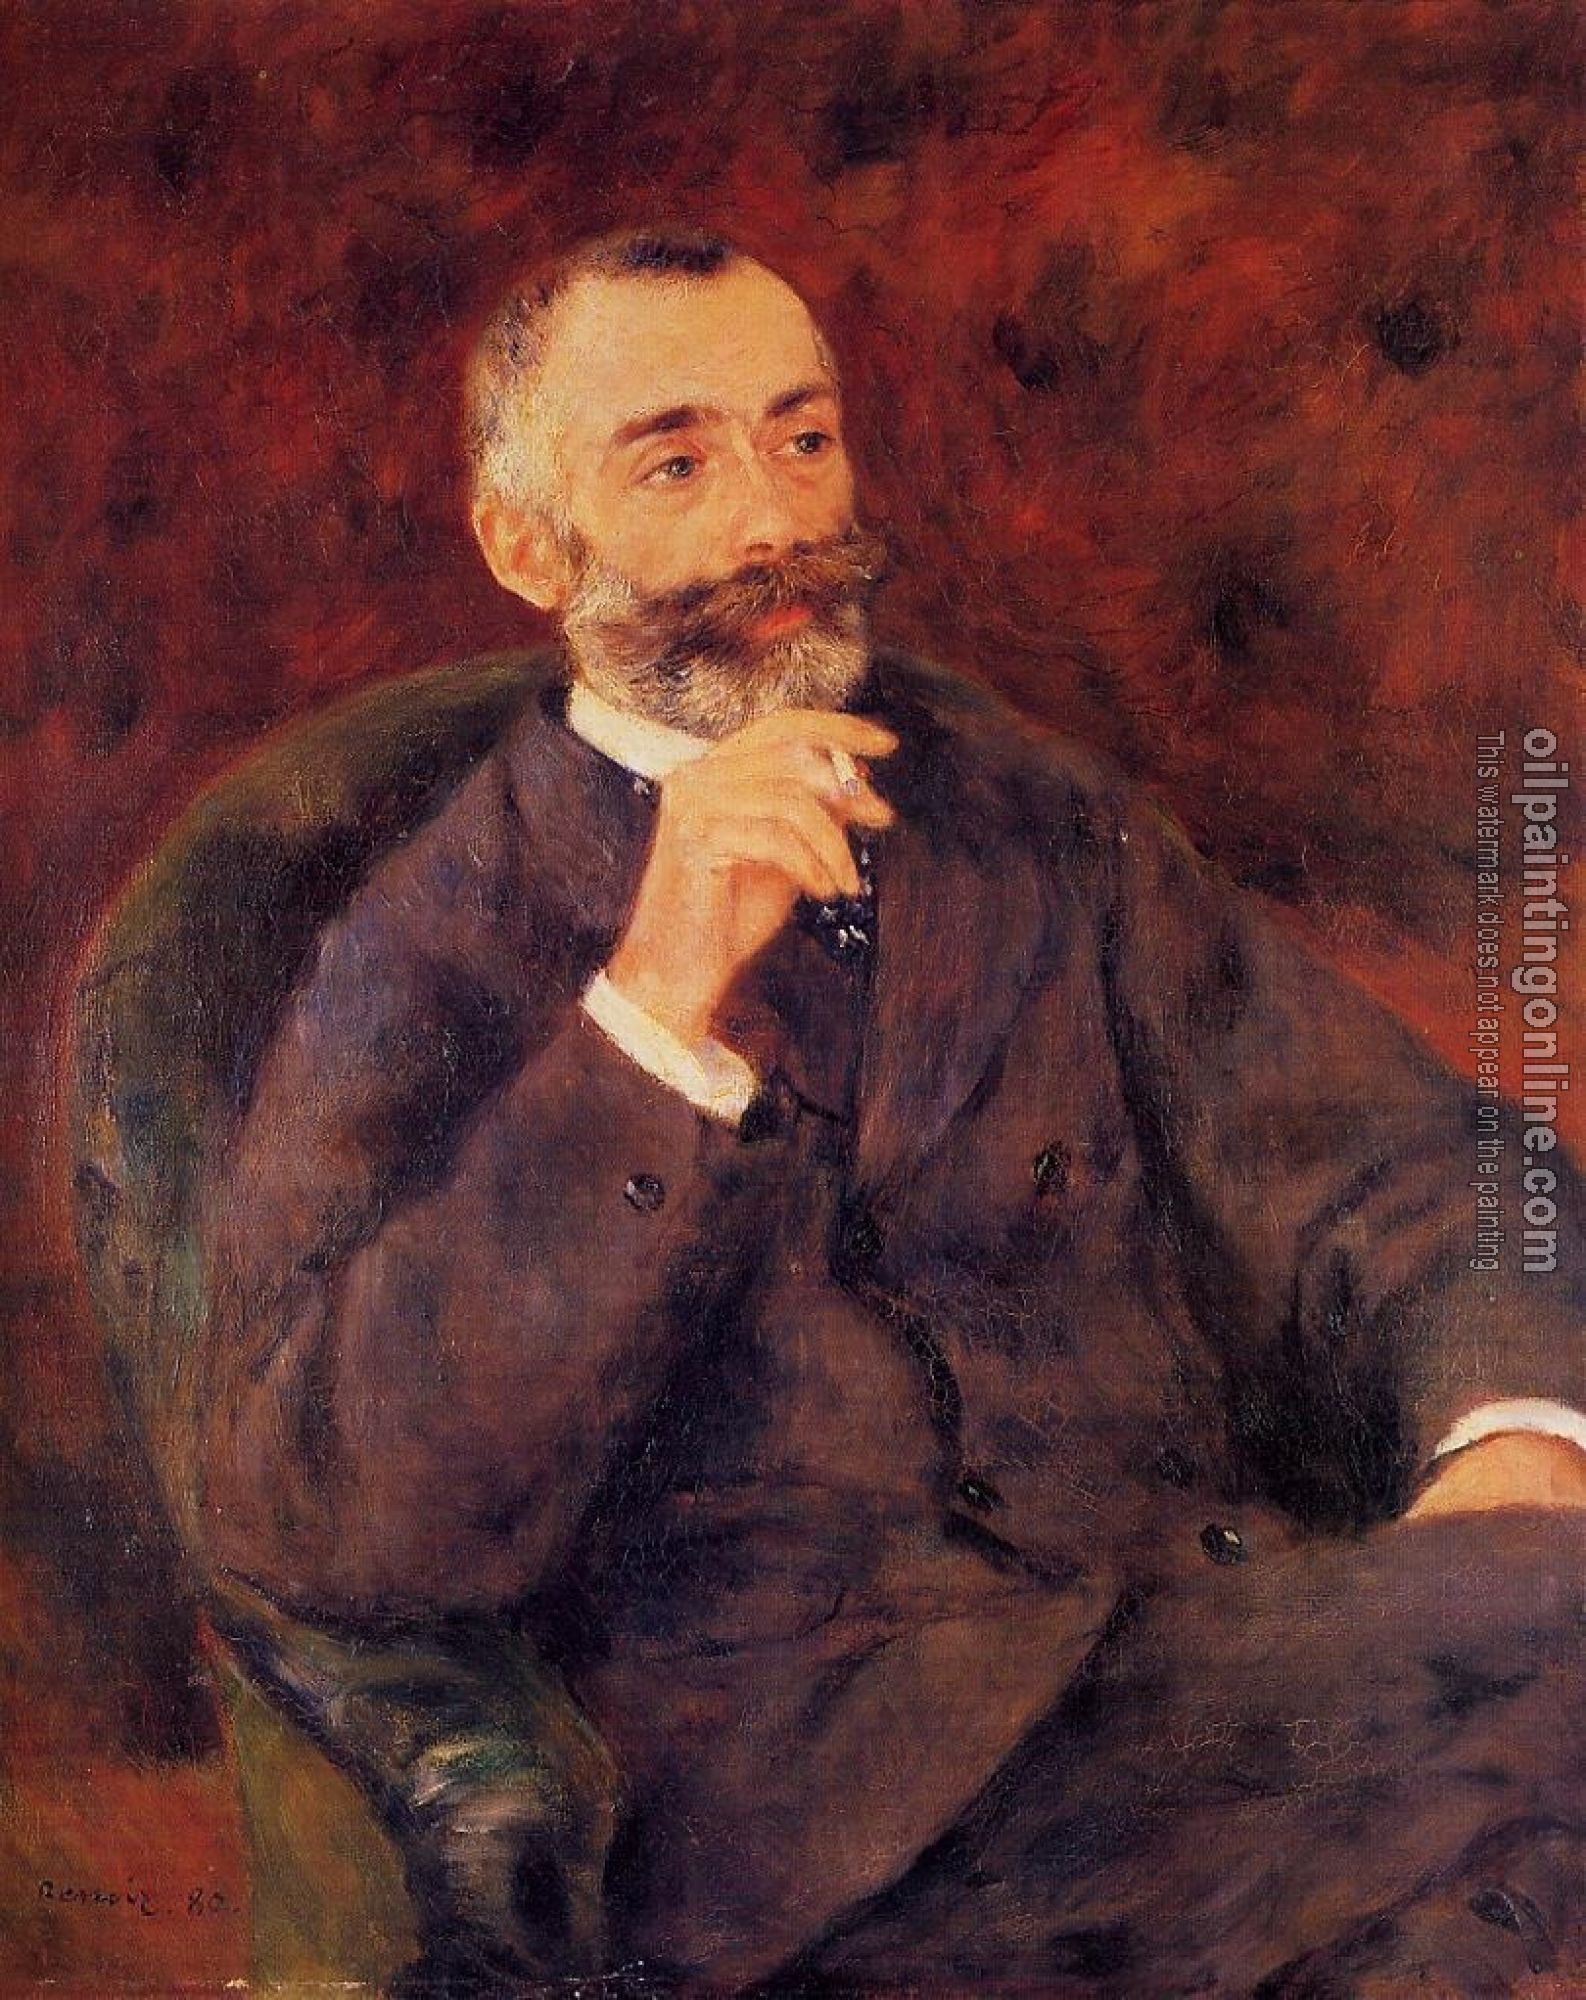 Renoir, Pierre Auguste - Paul Berard